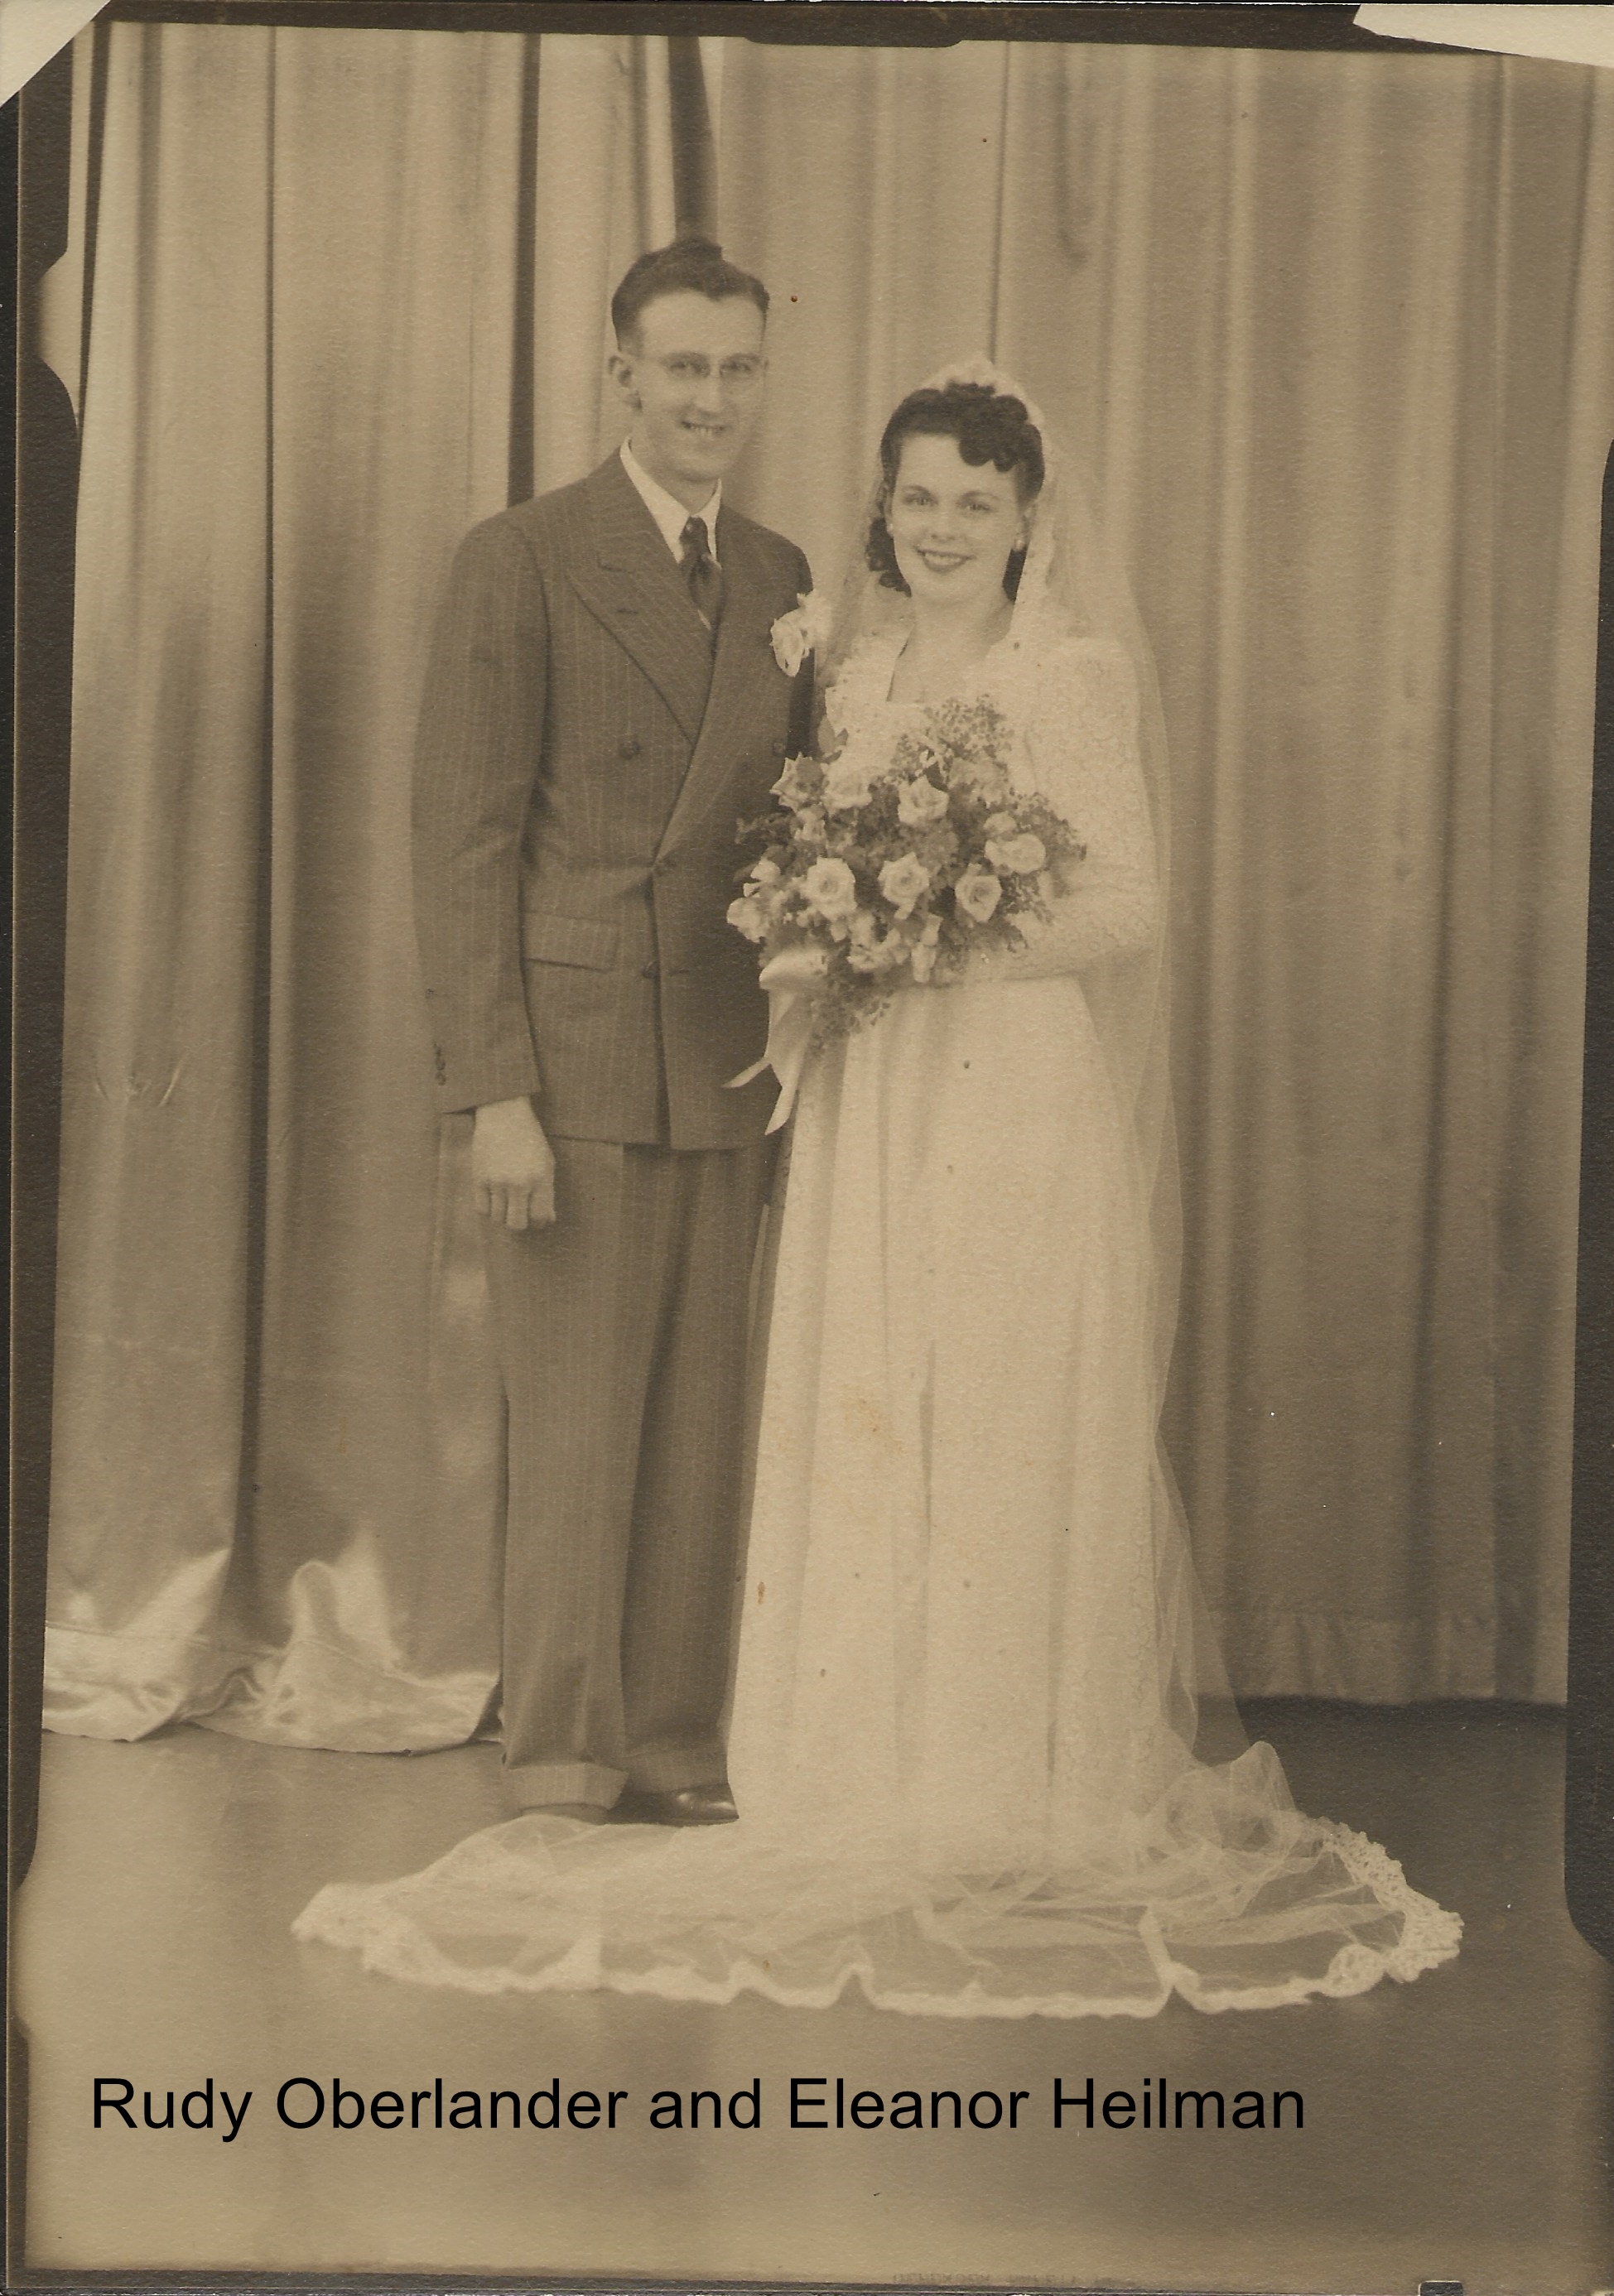 Eleanor Heilman and Rudy Oberlander wedding